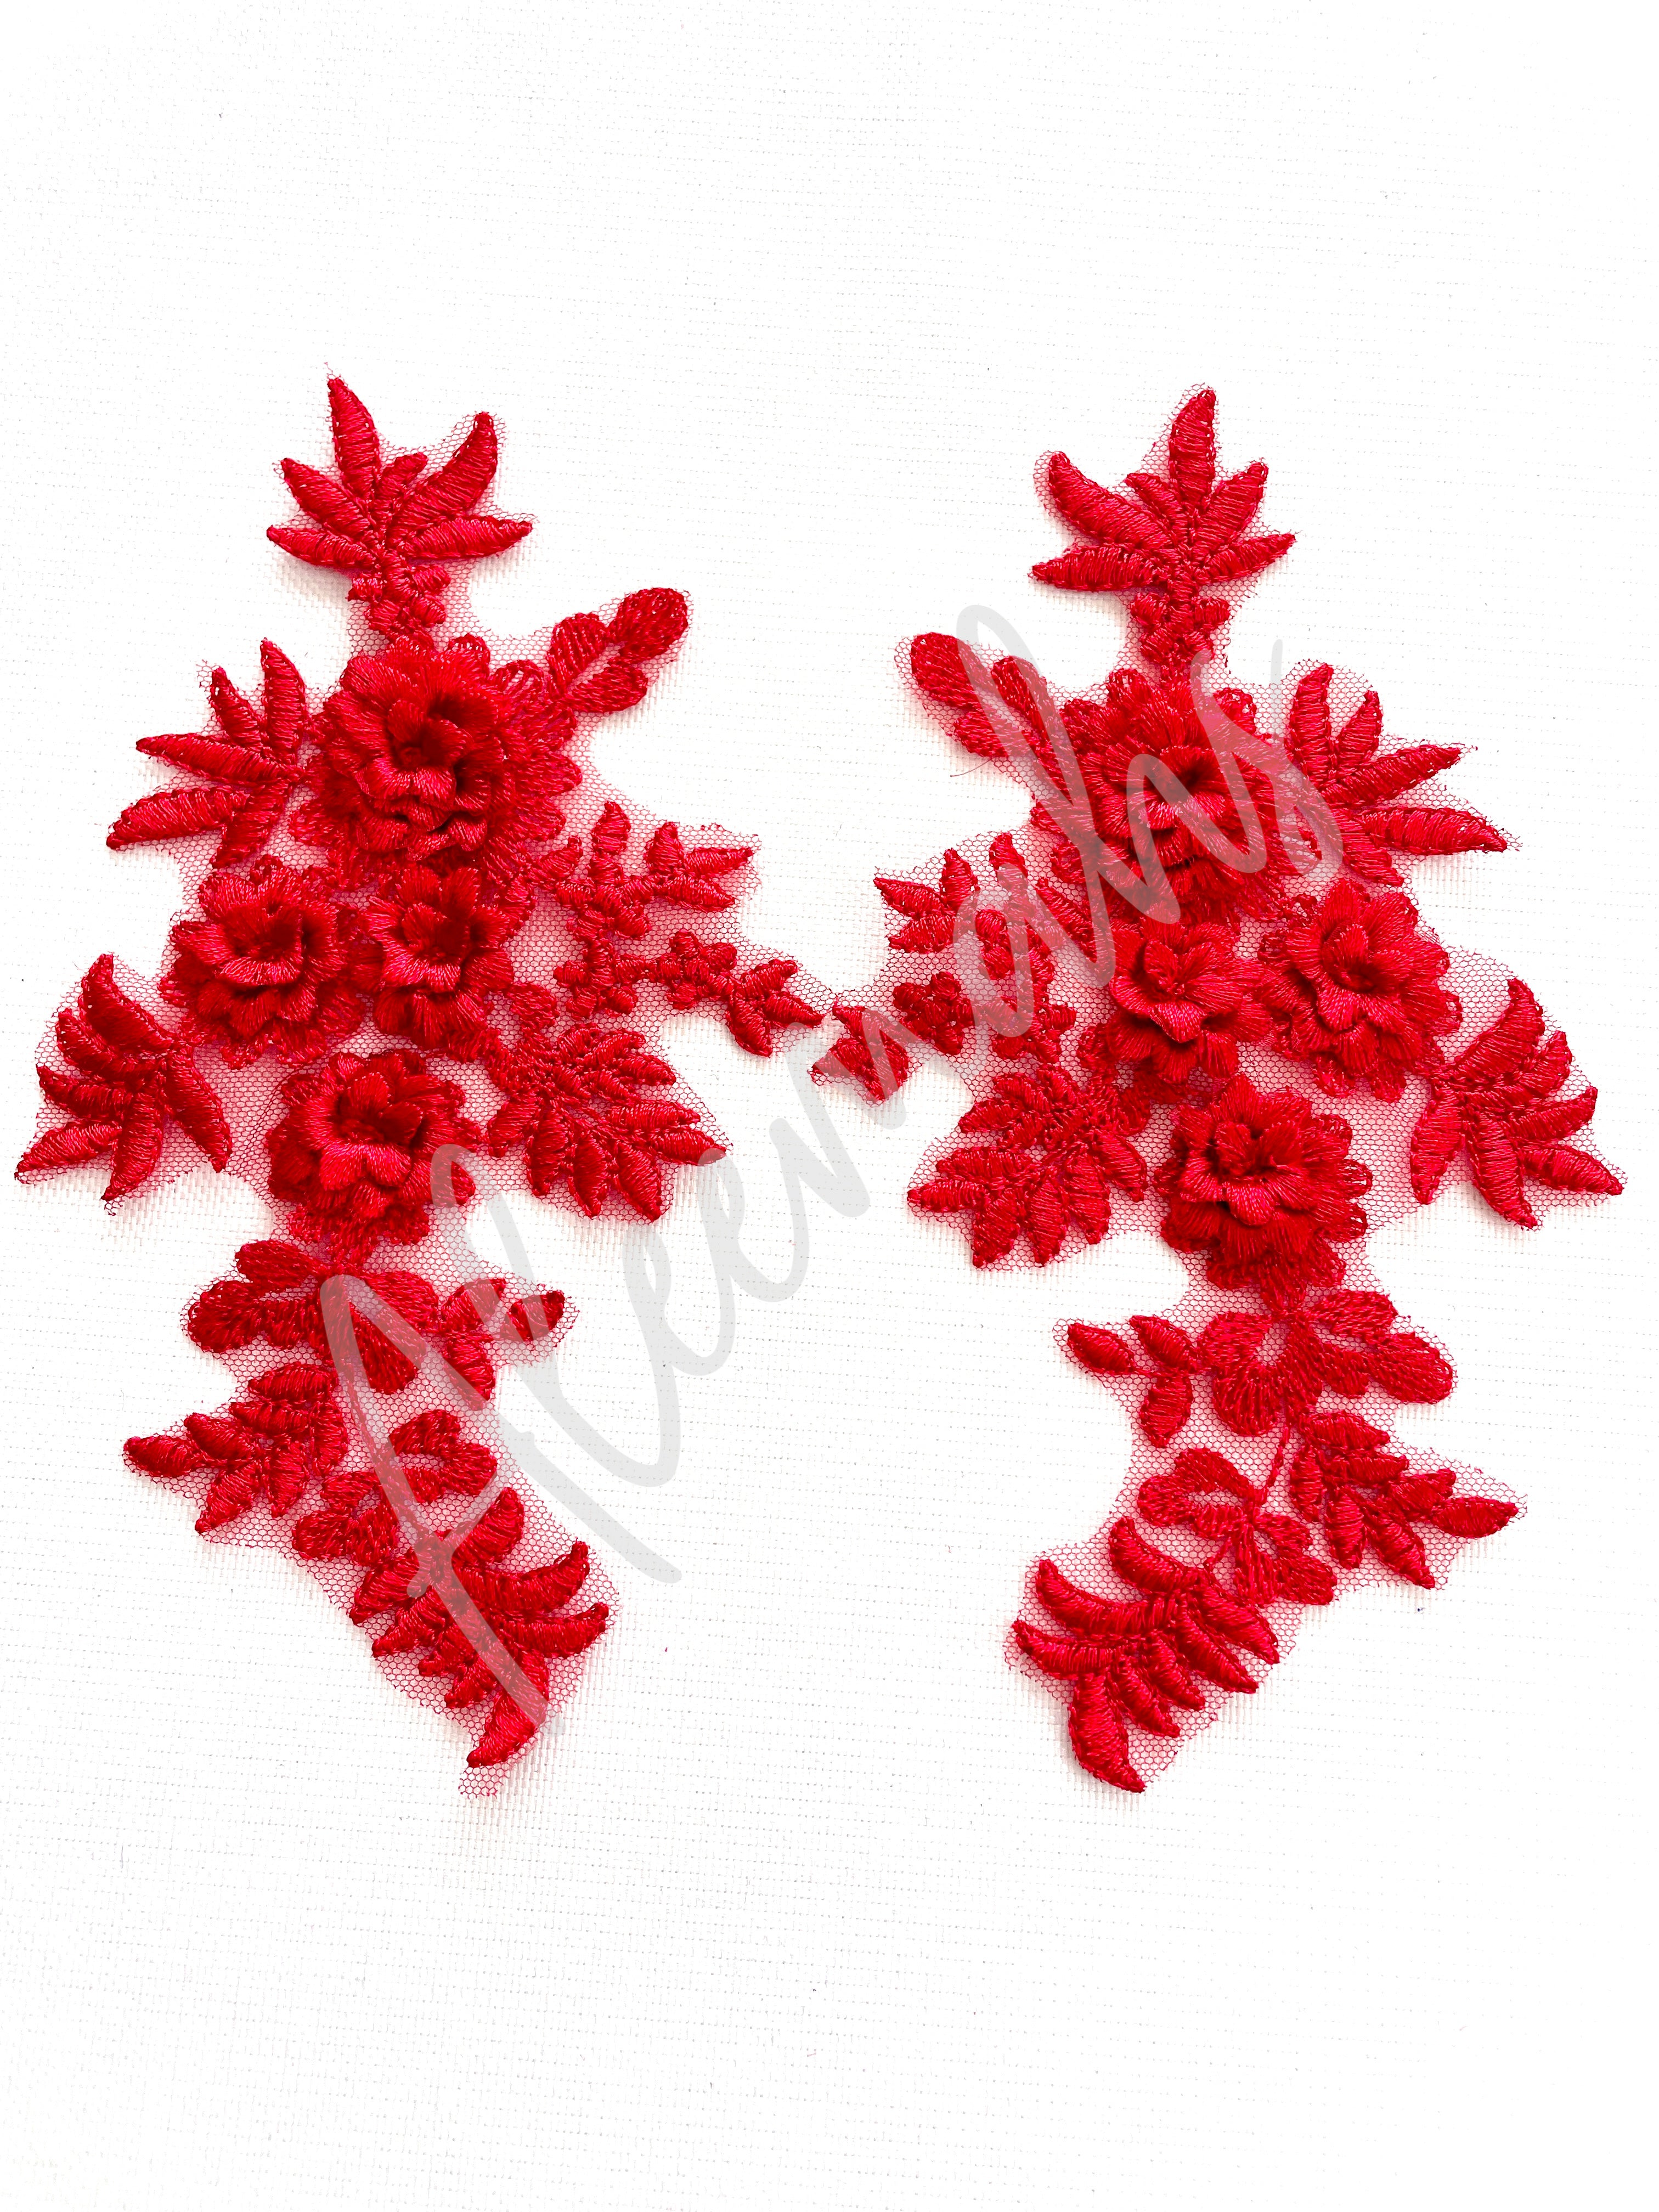 LA-033: 3D floral lace applique pair: Red